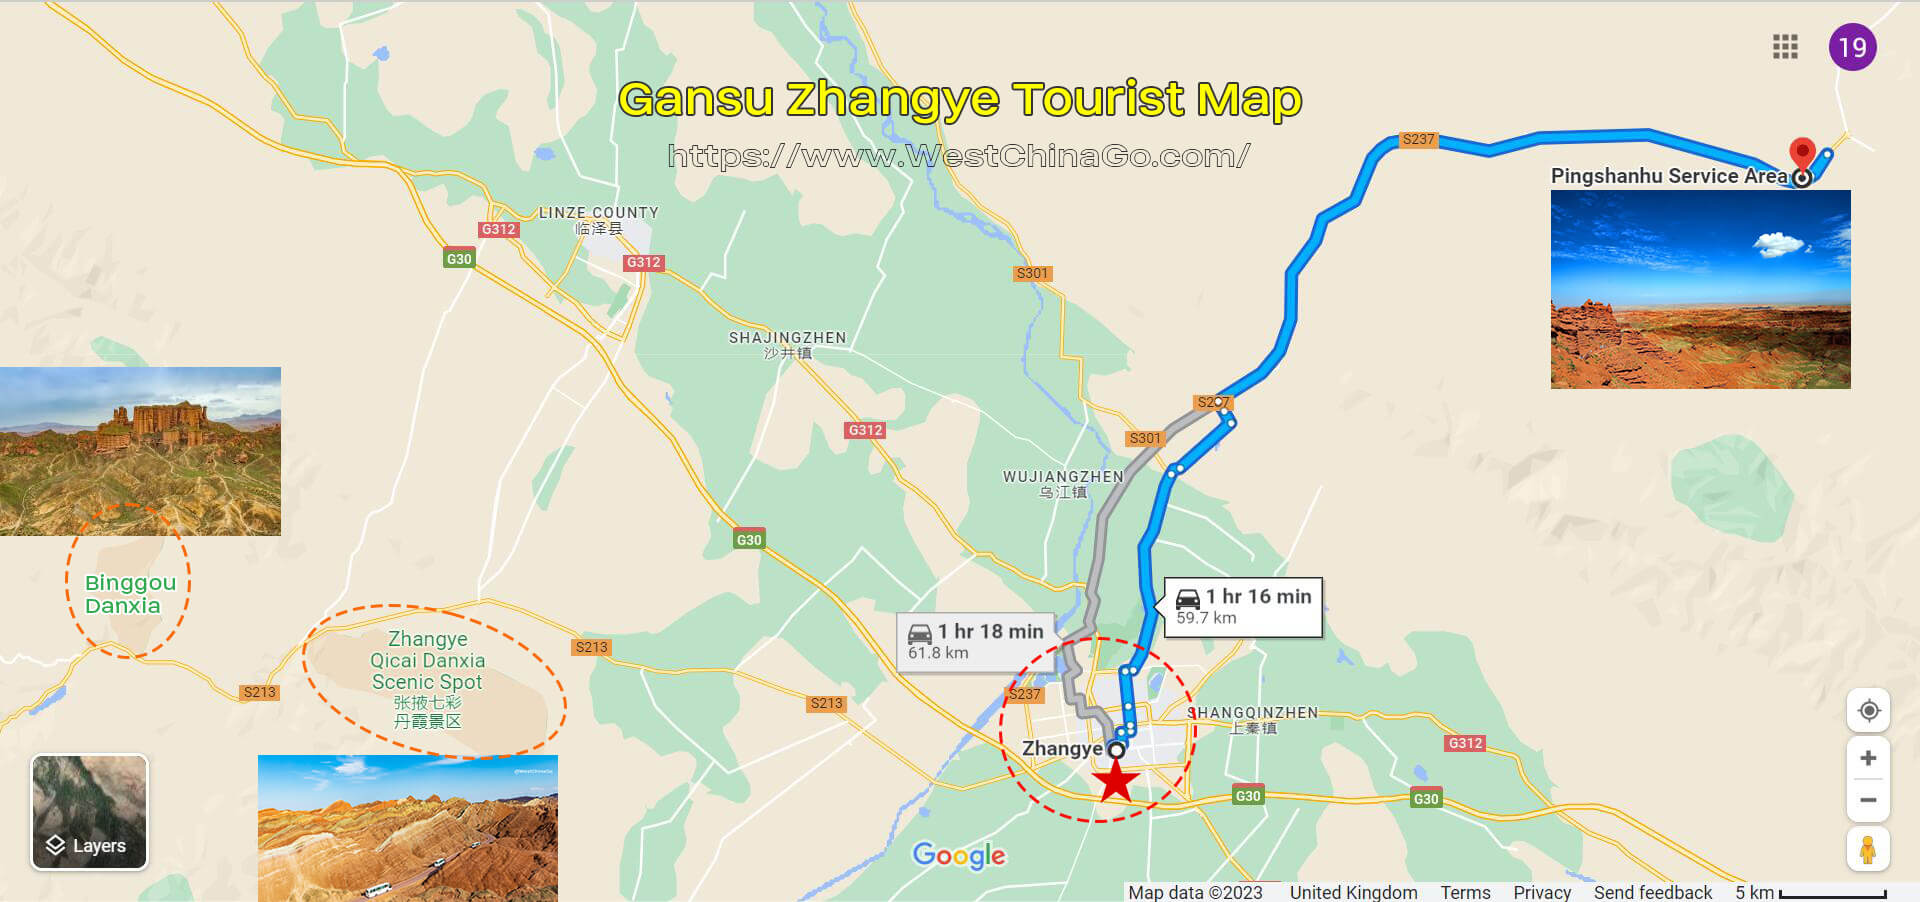 ZhangYe PingShanHu Grand Canyon Tourist Map